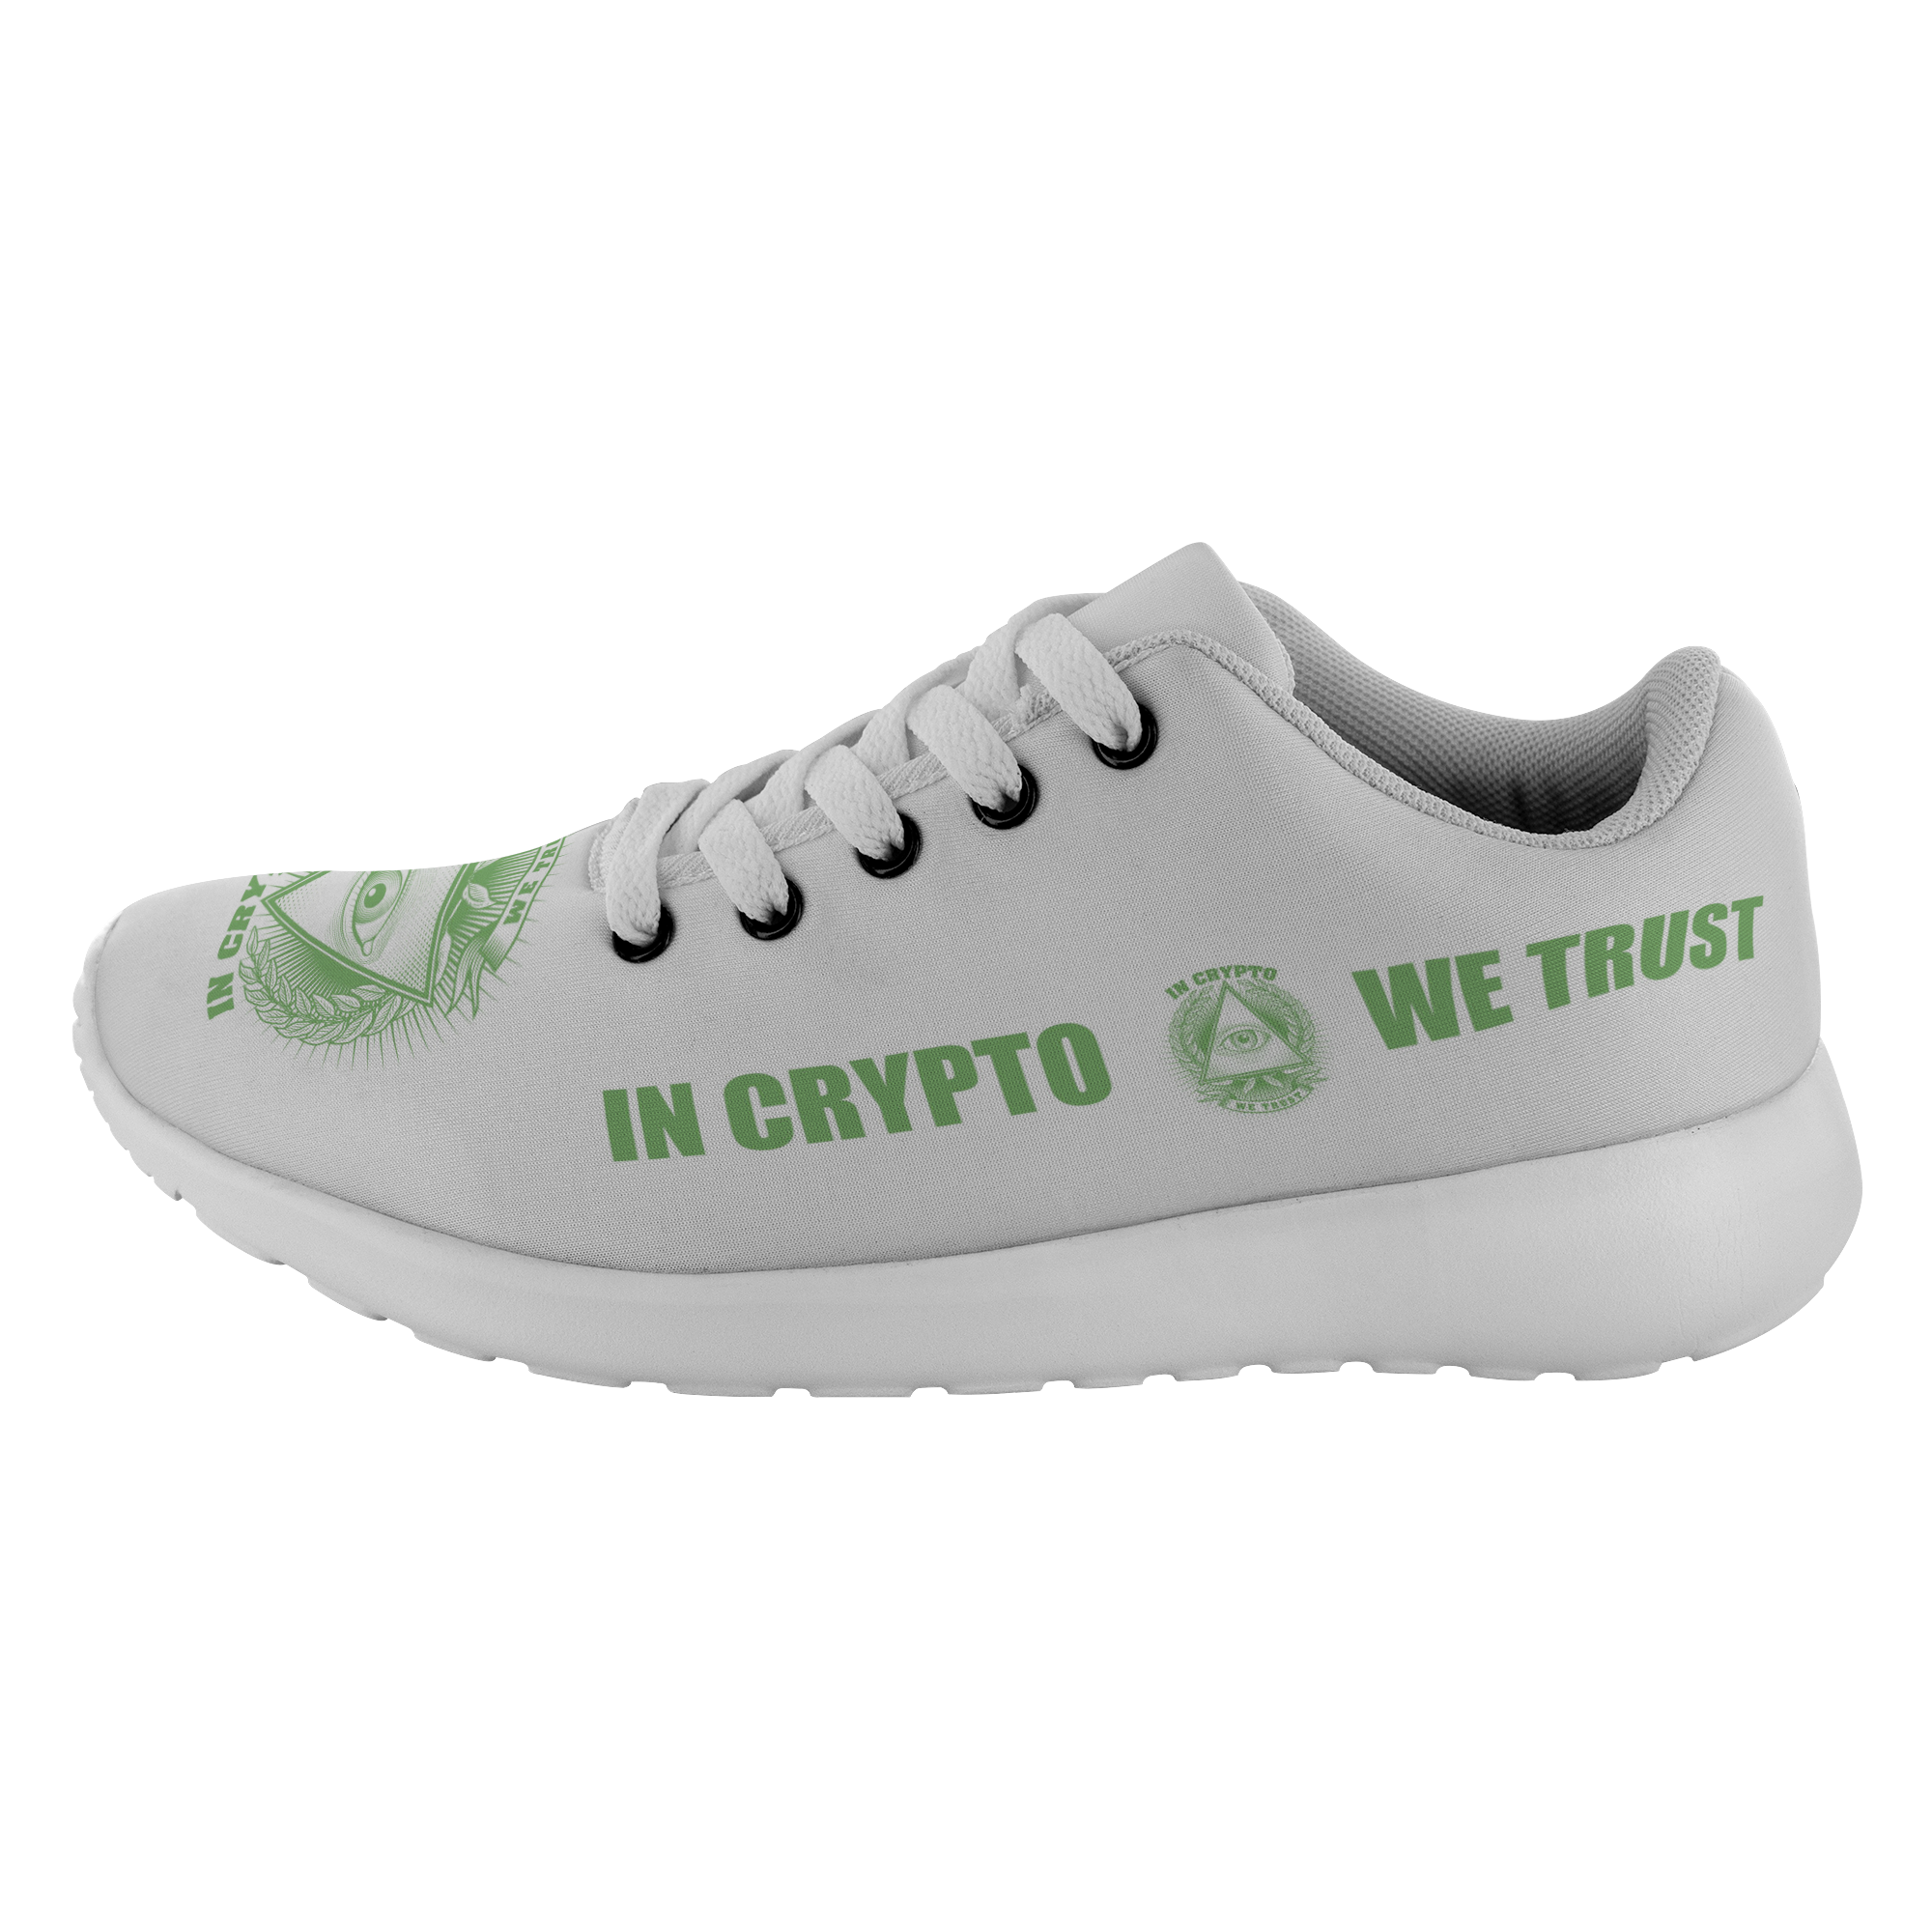 Zapatillas para correr: en Crypto confiamos - 0